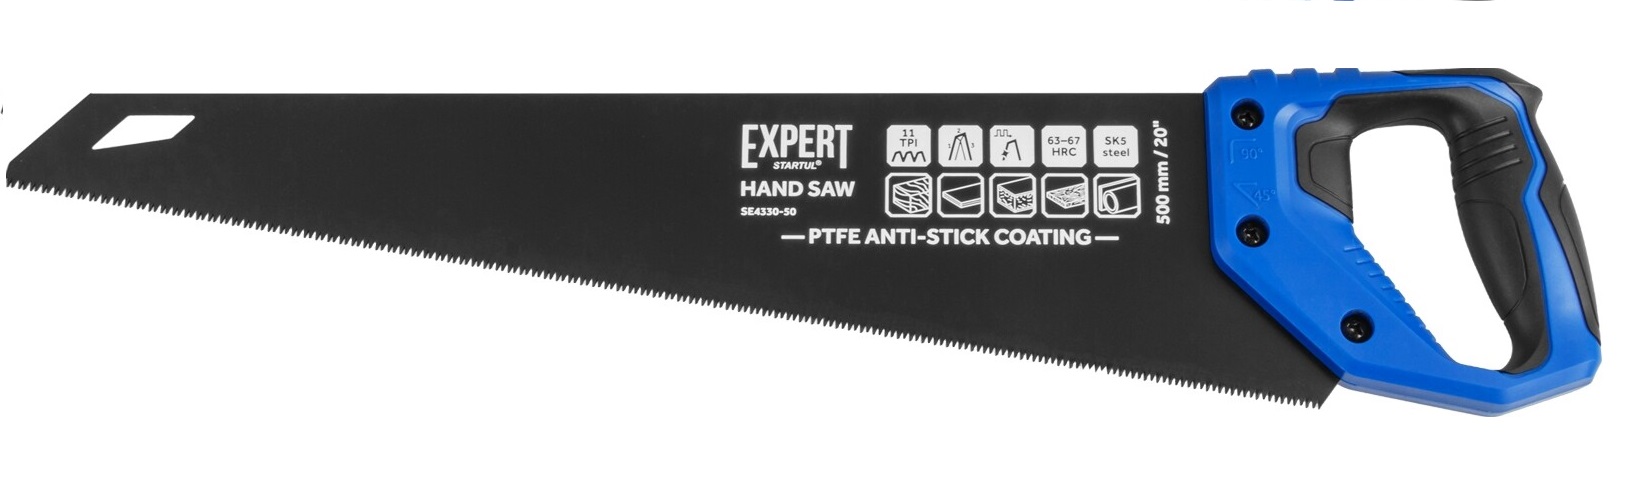 Ножовка по дереву STARTUL Expert 500 мм (SE4330-50) ножовка по дереву startul